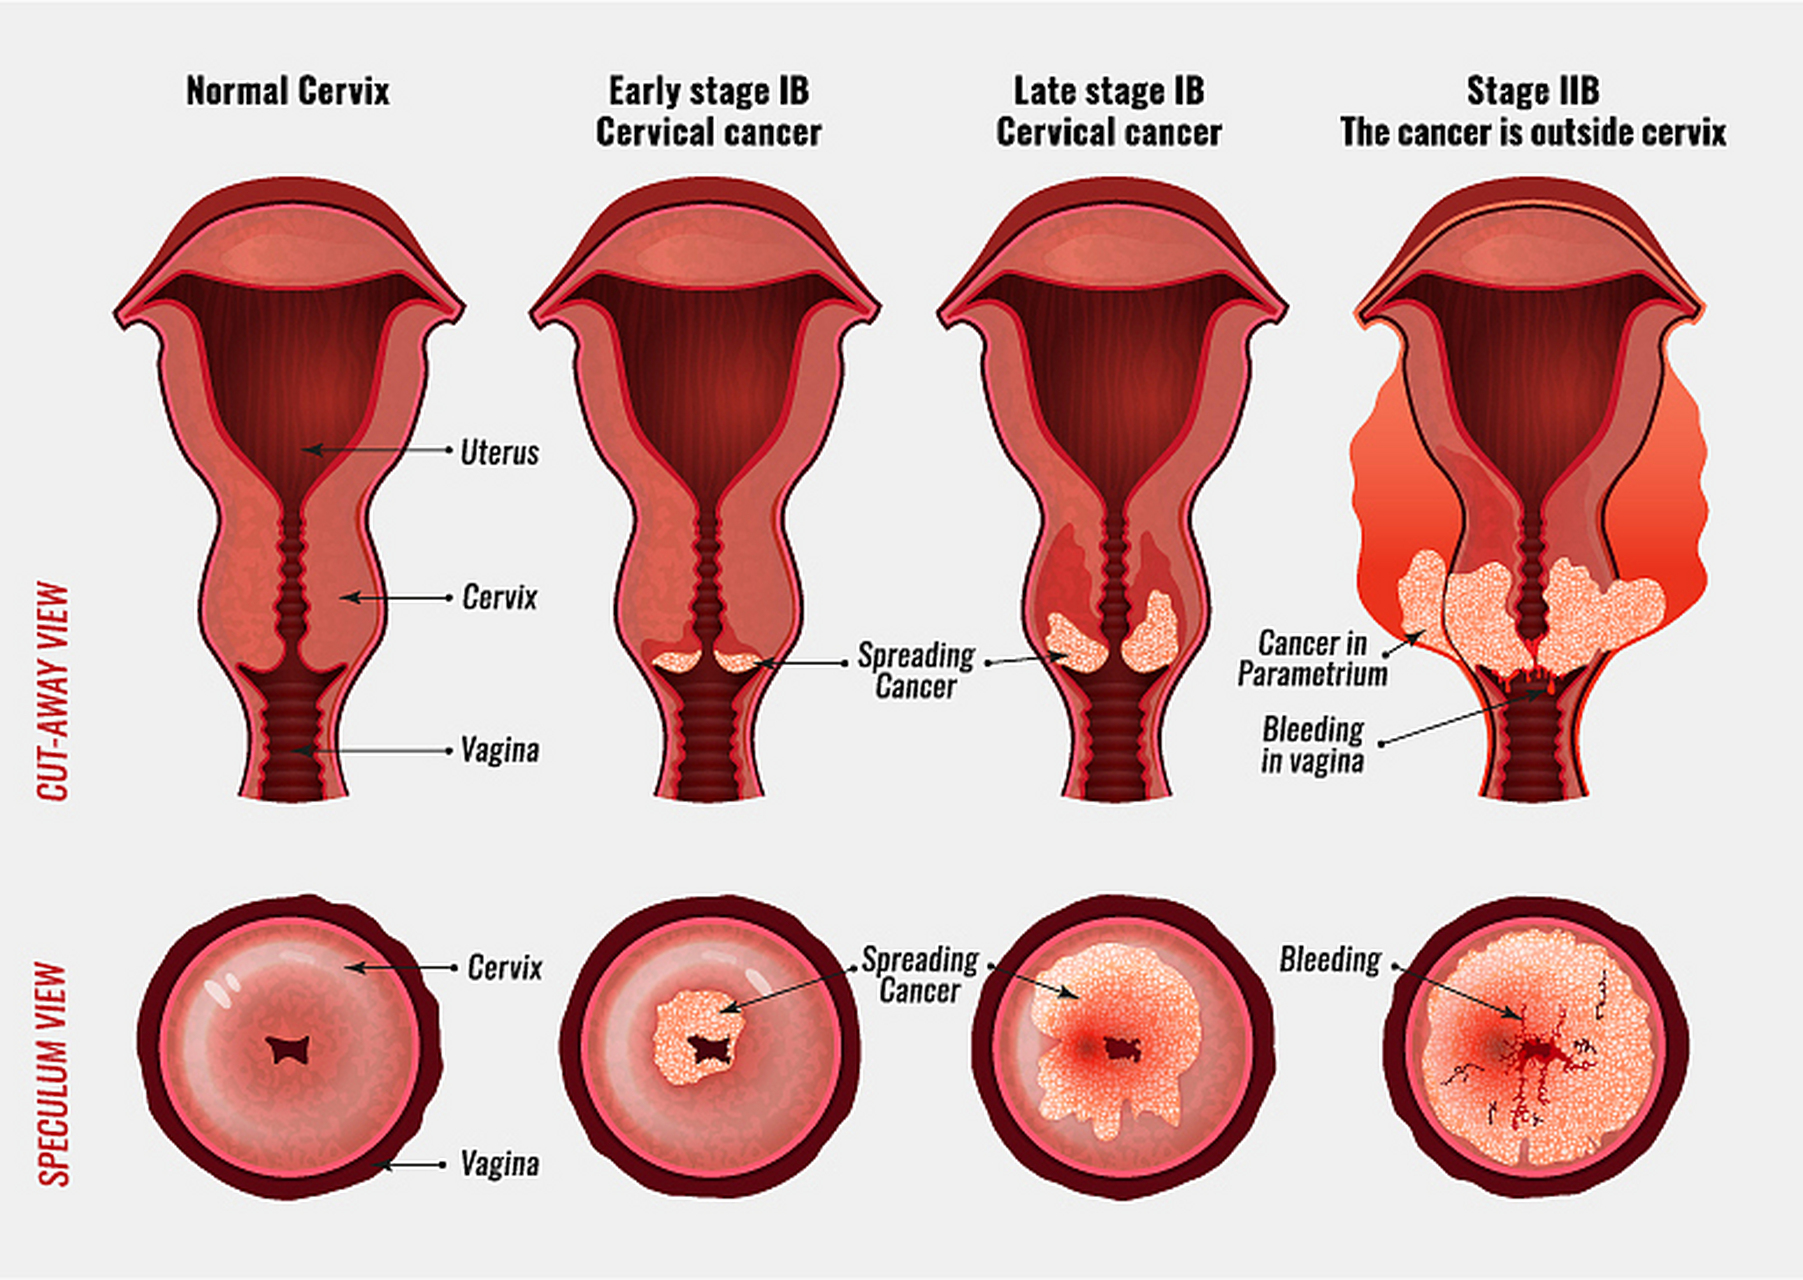 月经来潮前宫颈变化图图片